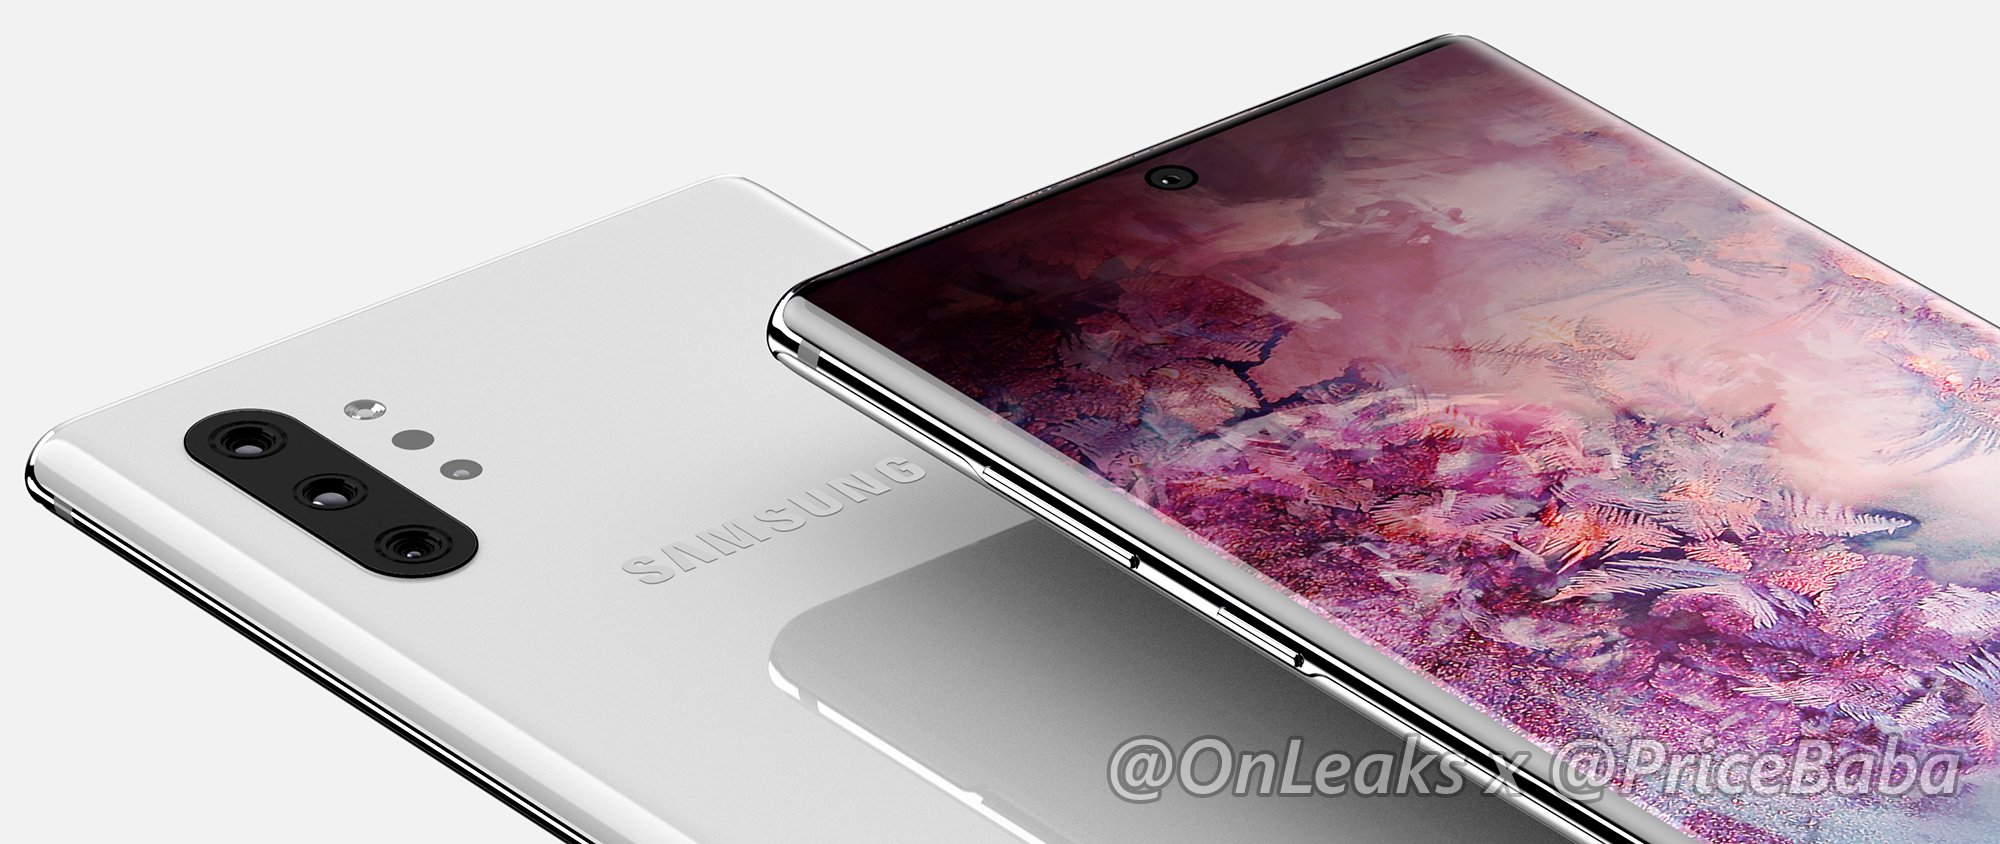 Samsung Galaxy Note 10 Pro rendery Onleaks przecieki wycieki plotki kiedy premiera specyfikacja techniczna Samsung Galaxy A90